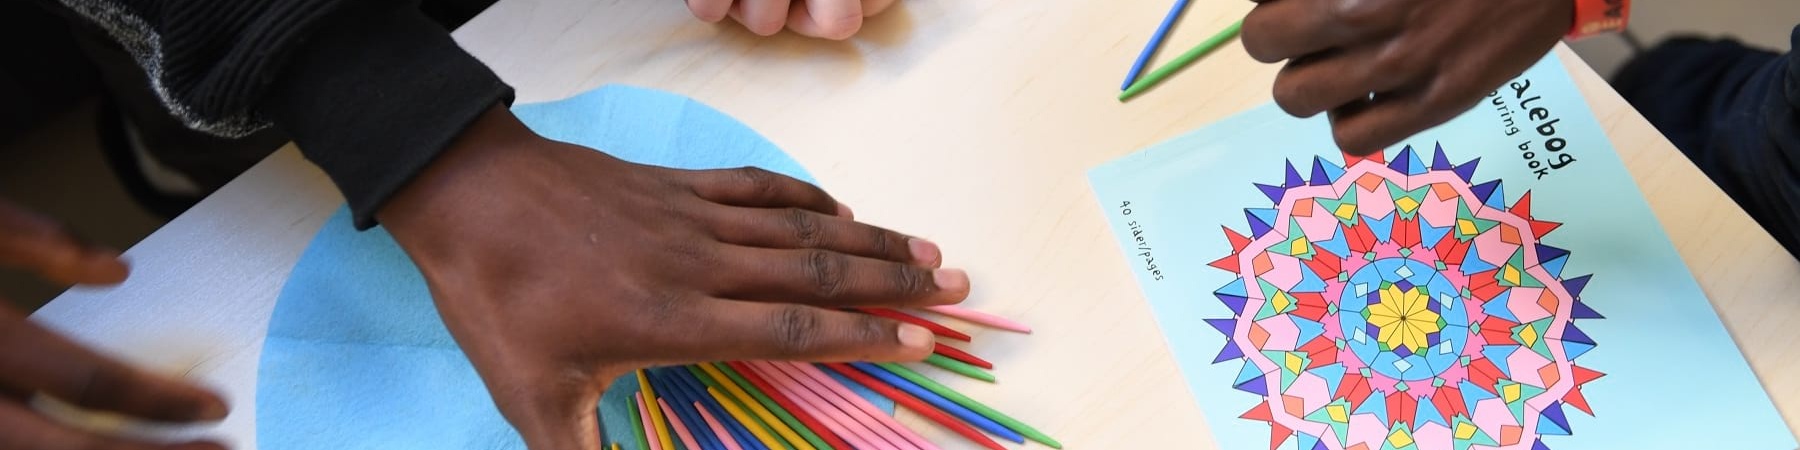 mani di ragazzini prese dall alto colorano un disegno appoggiato sul tavolo